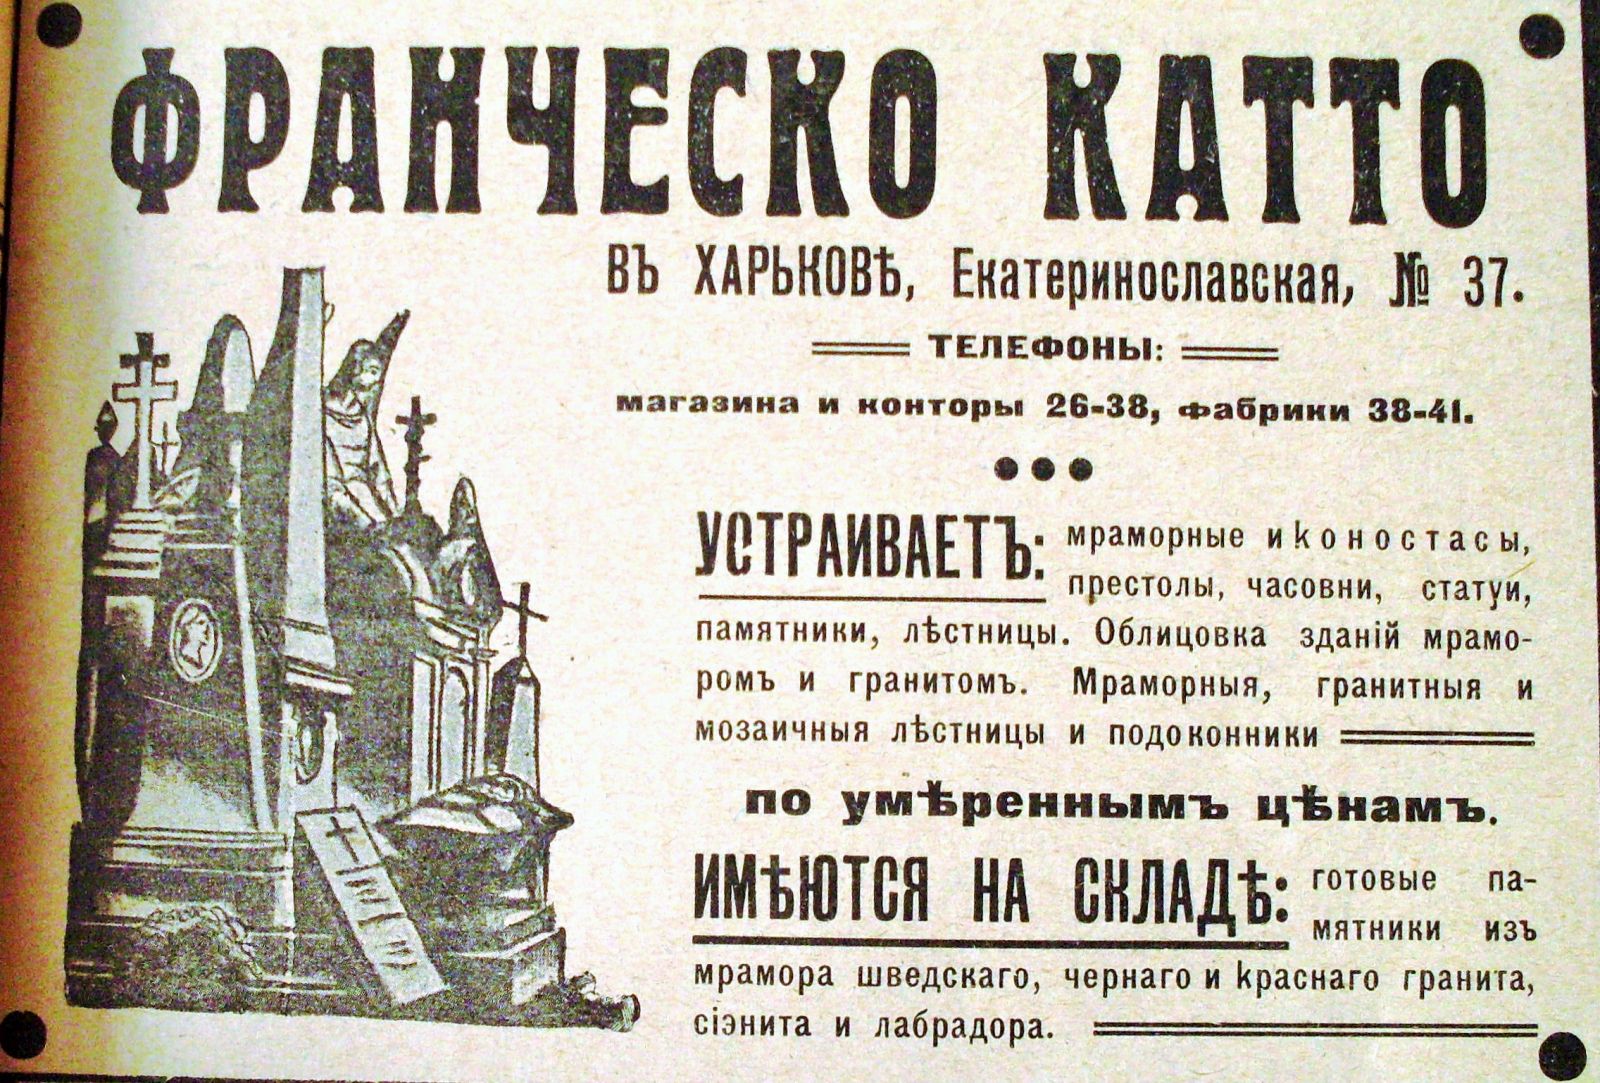 Реклама фірми Франческо Катто, 1916 рік